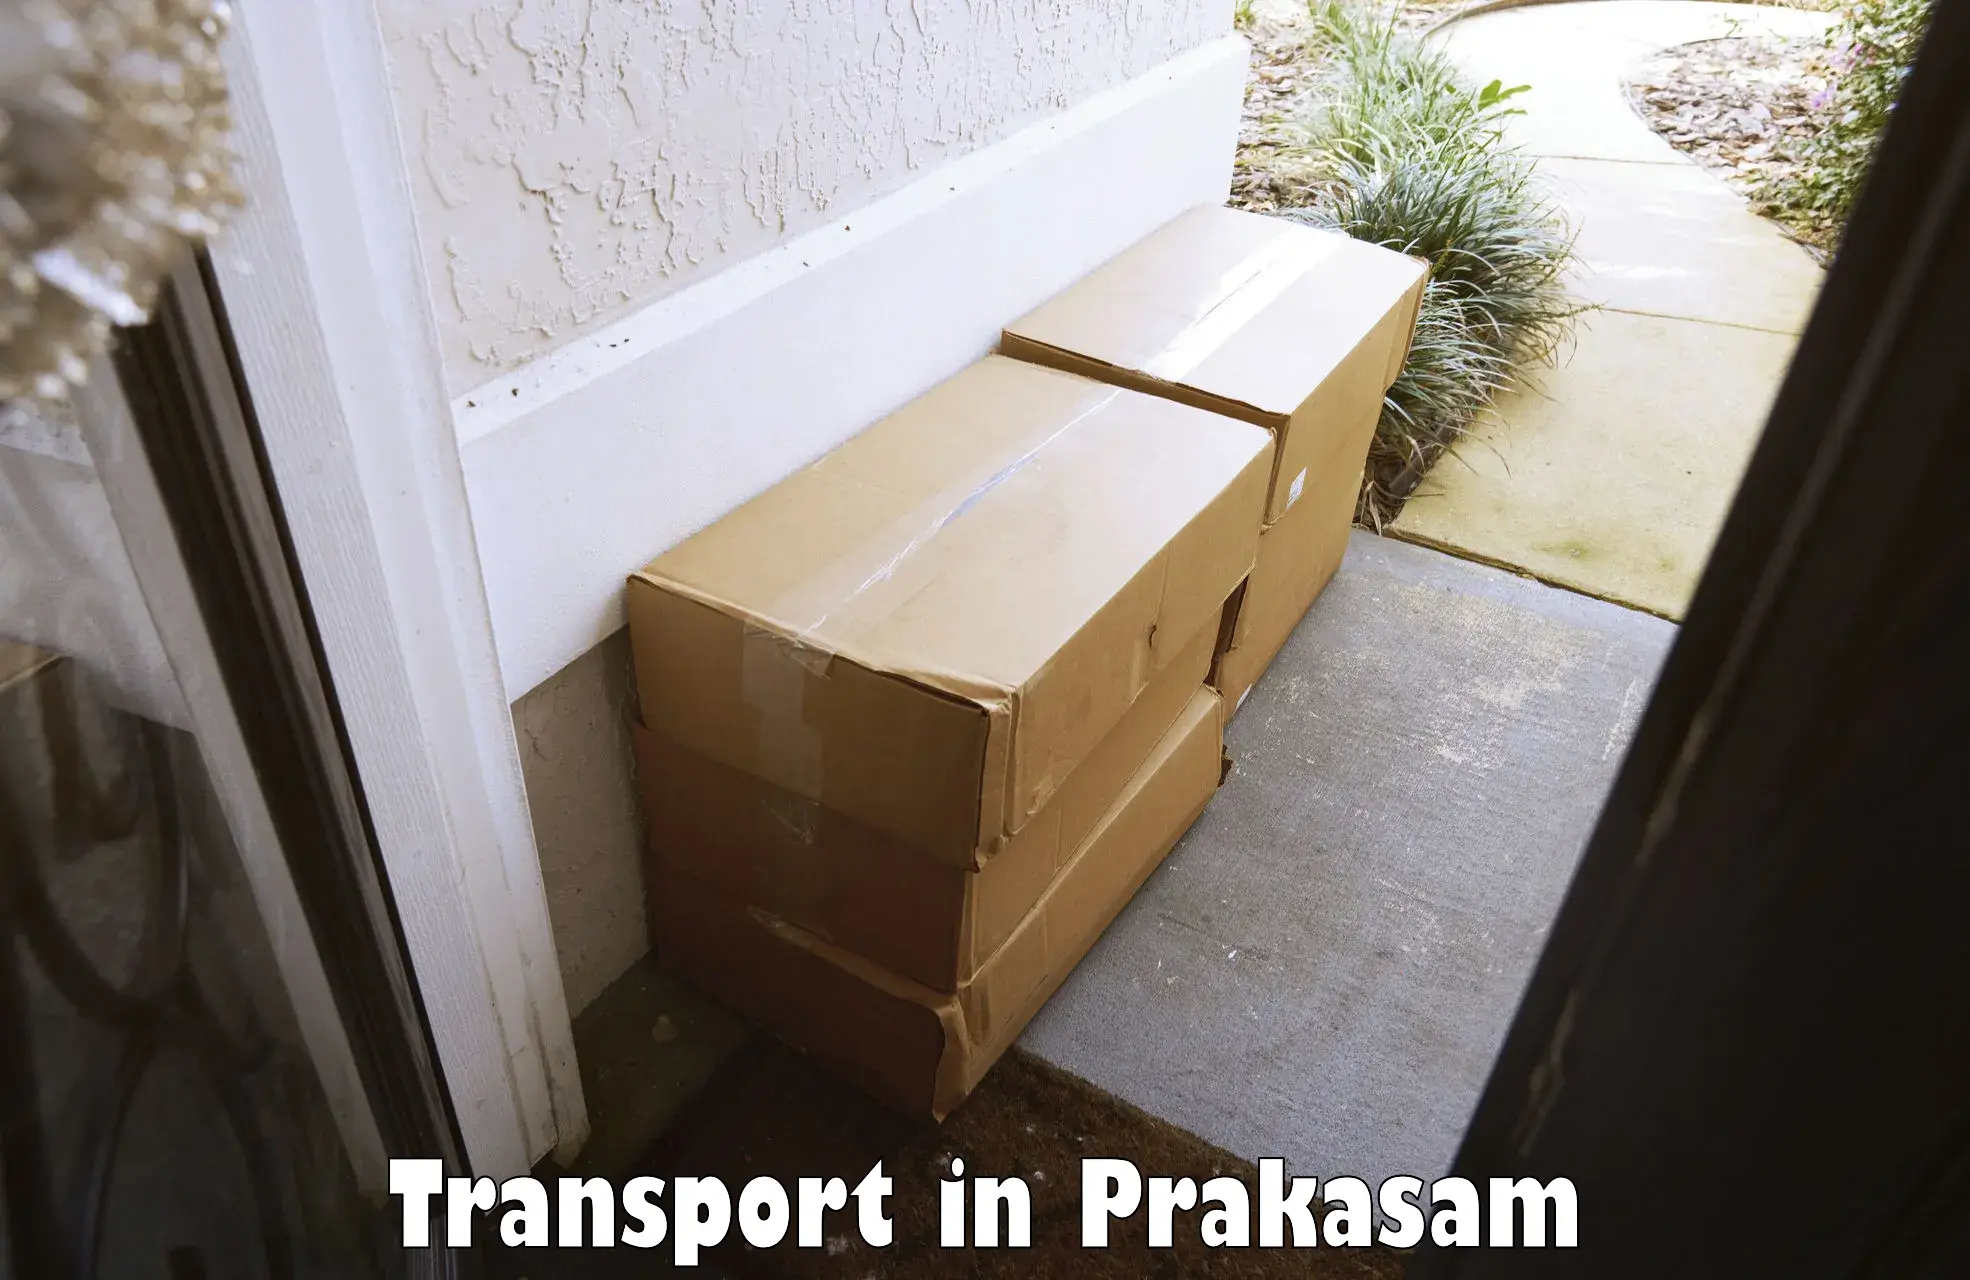 Online transport in Prakasam